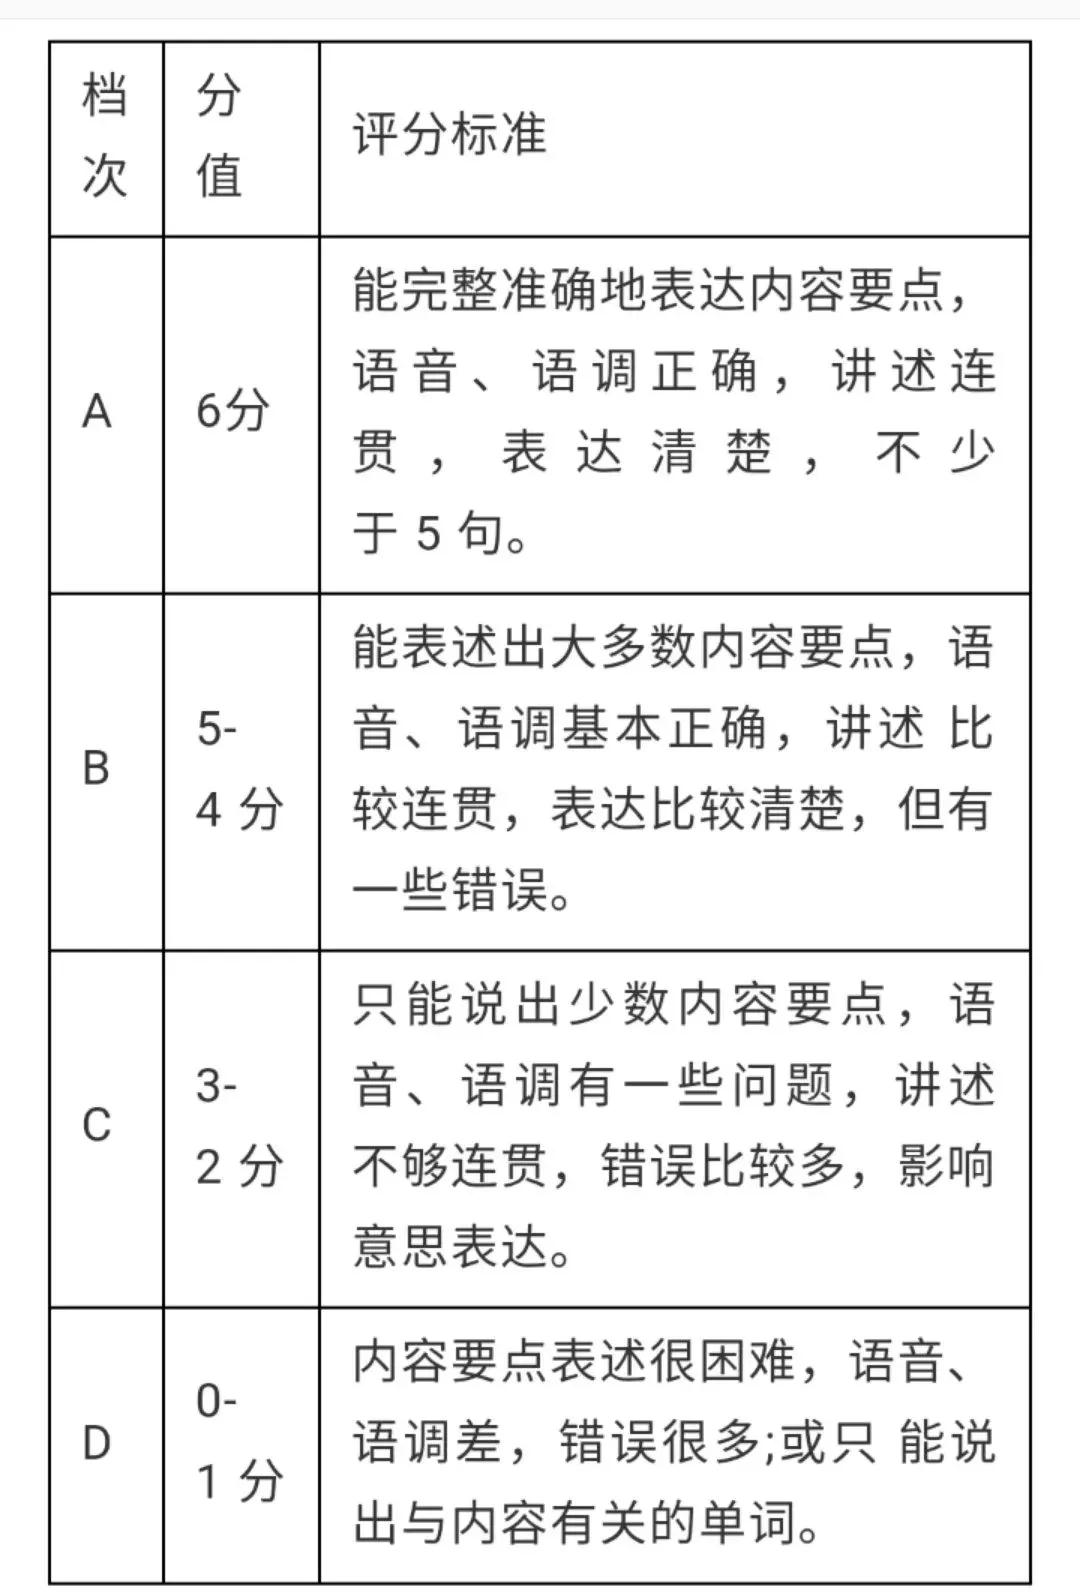 2020年台州中考人机交流考试要求及时间安排